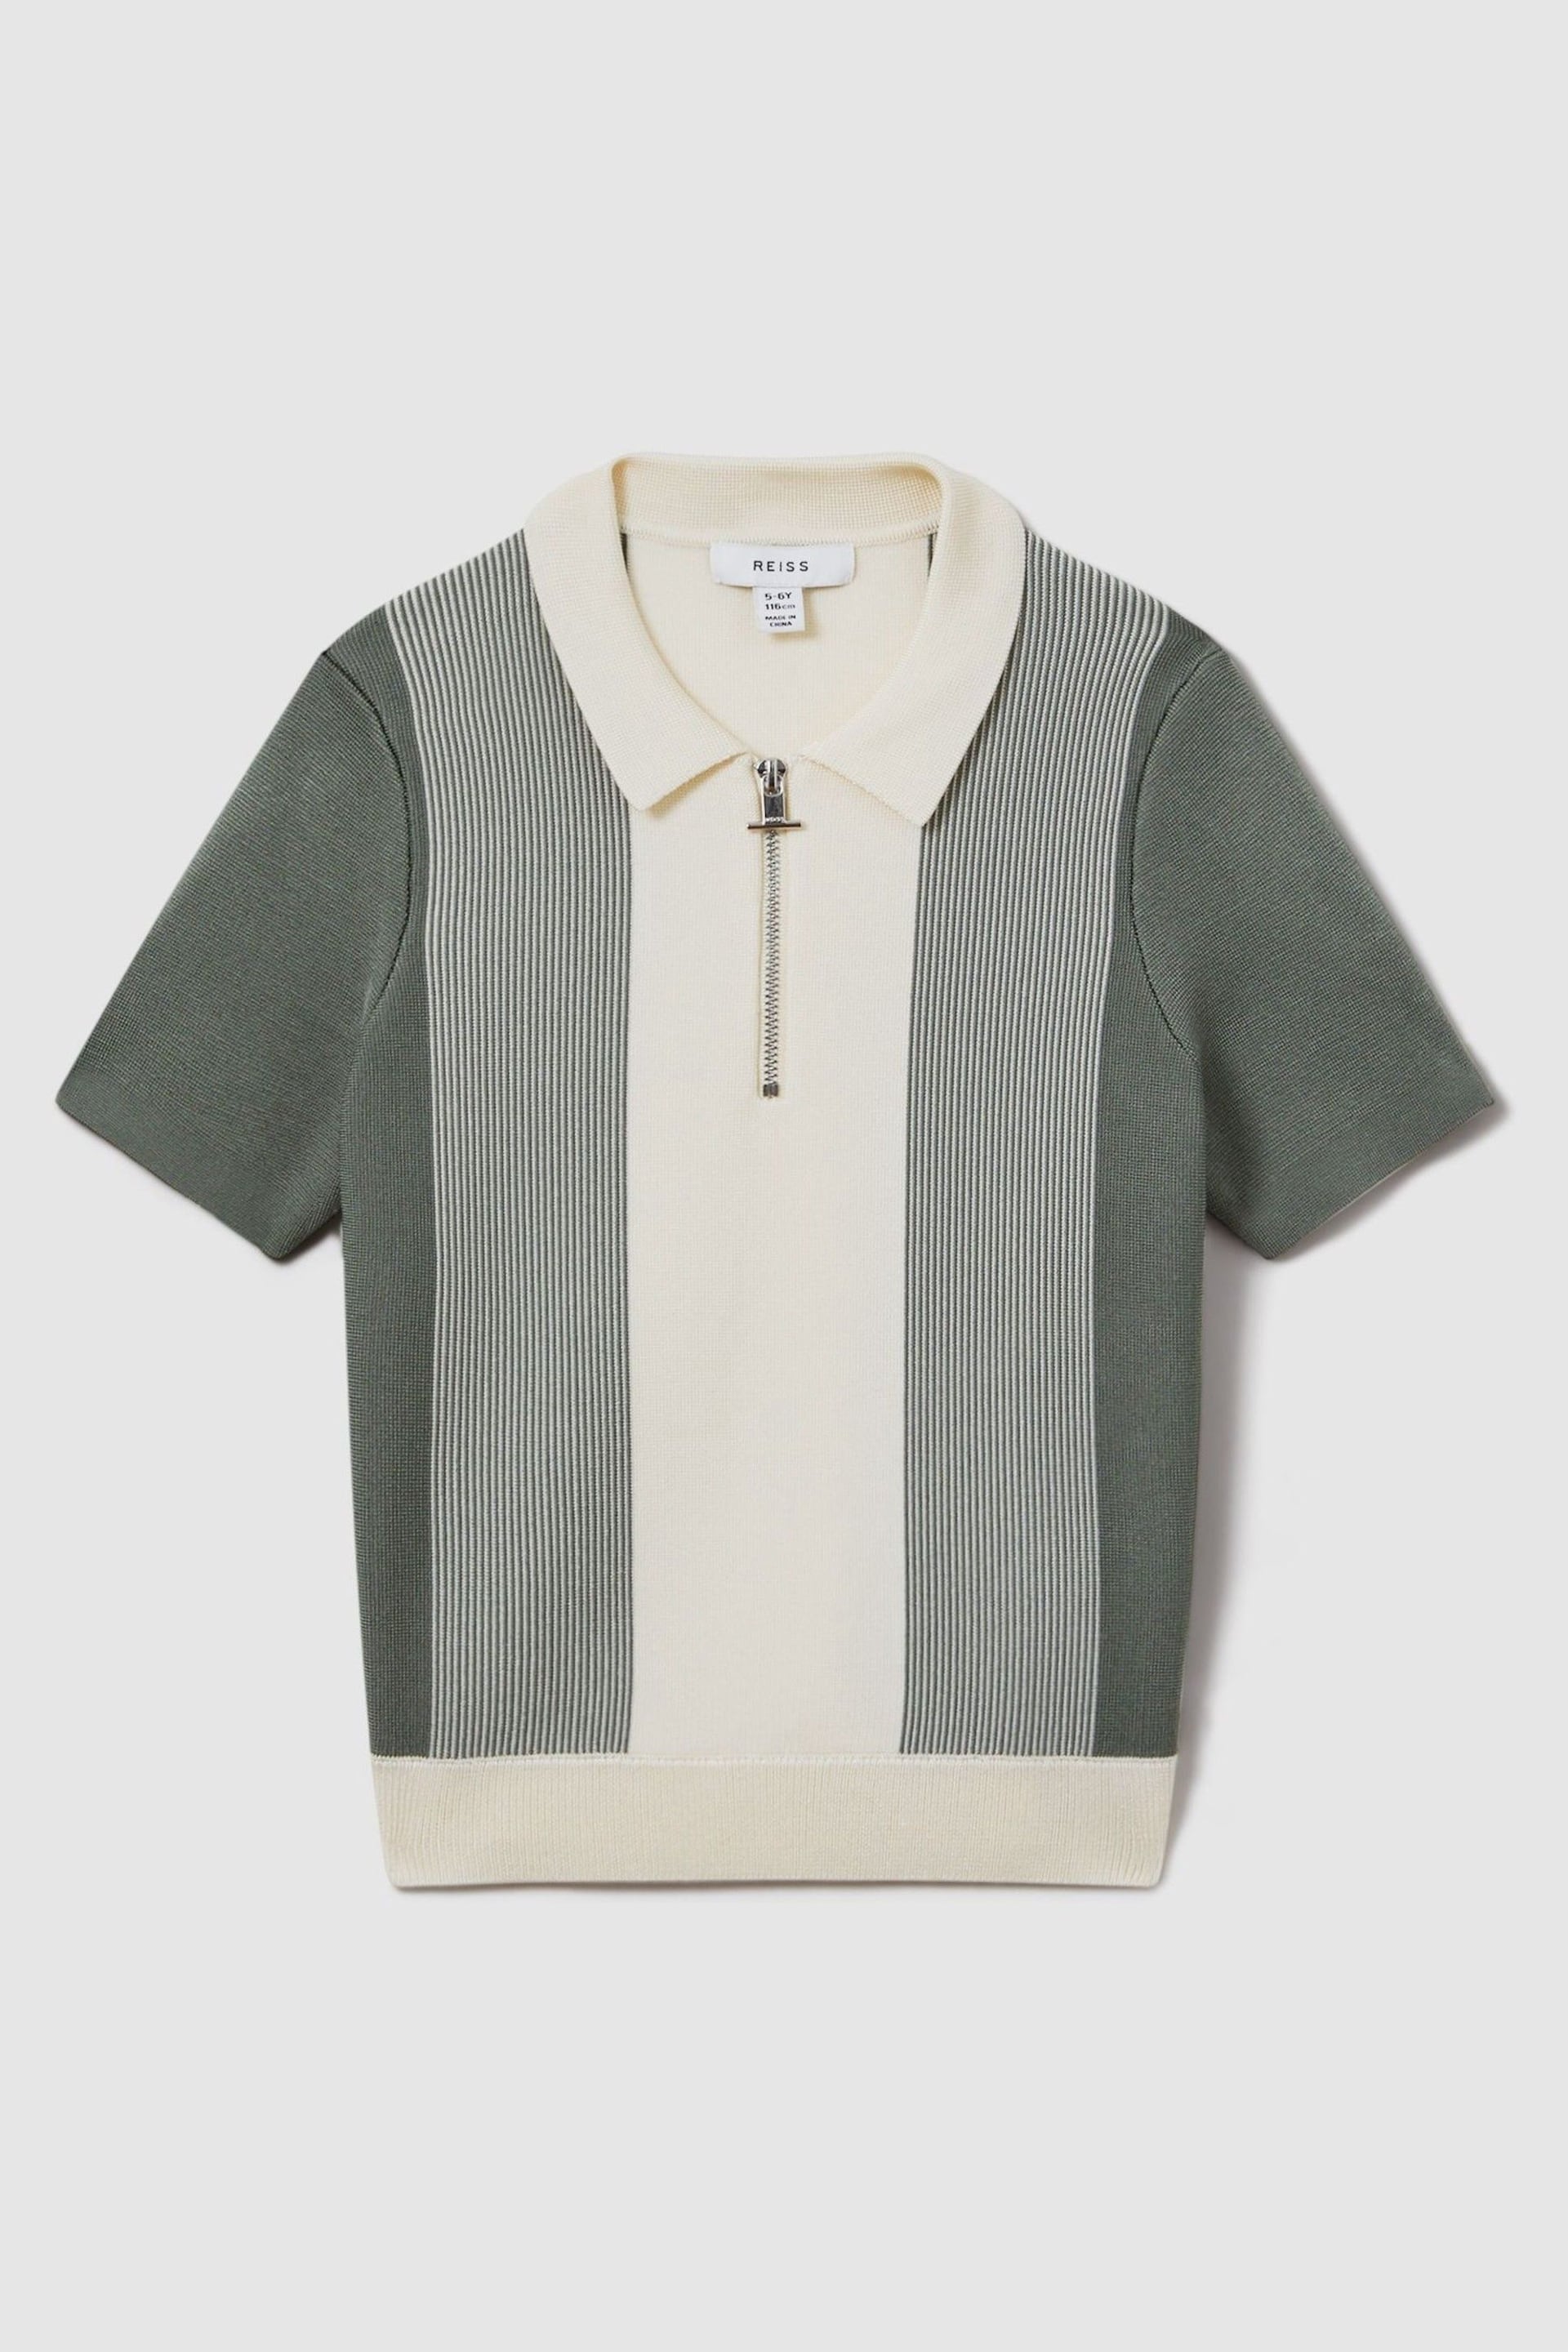 Reiss Sage Milton Senior Half-Zip Striped Polo Shirt - Image 2 of 4